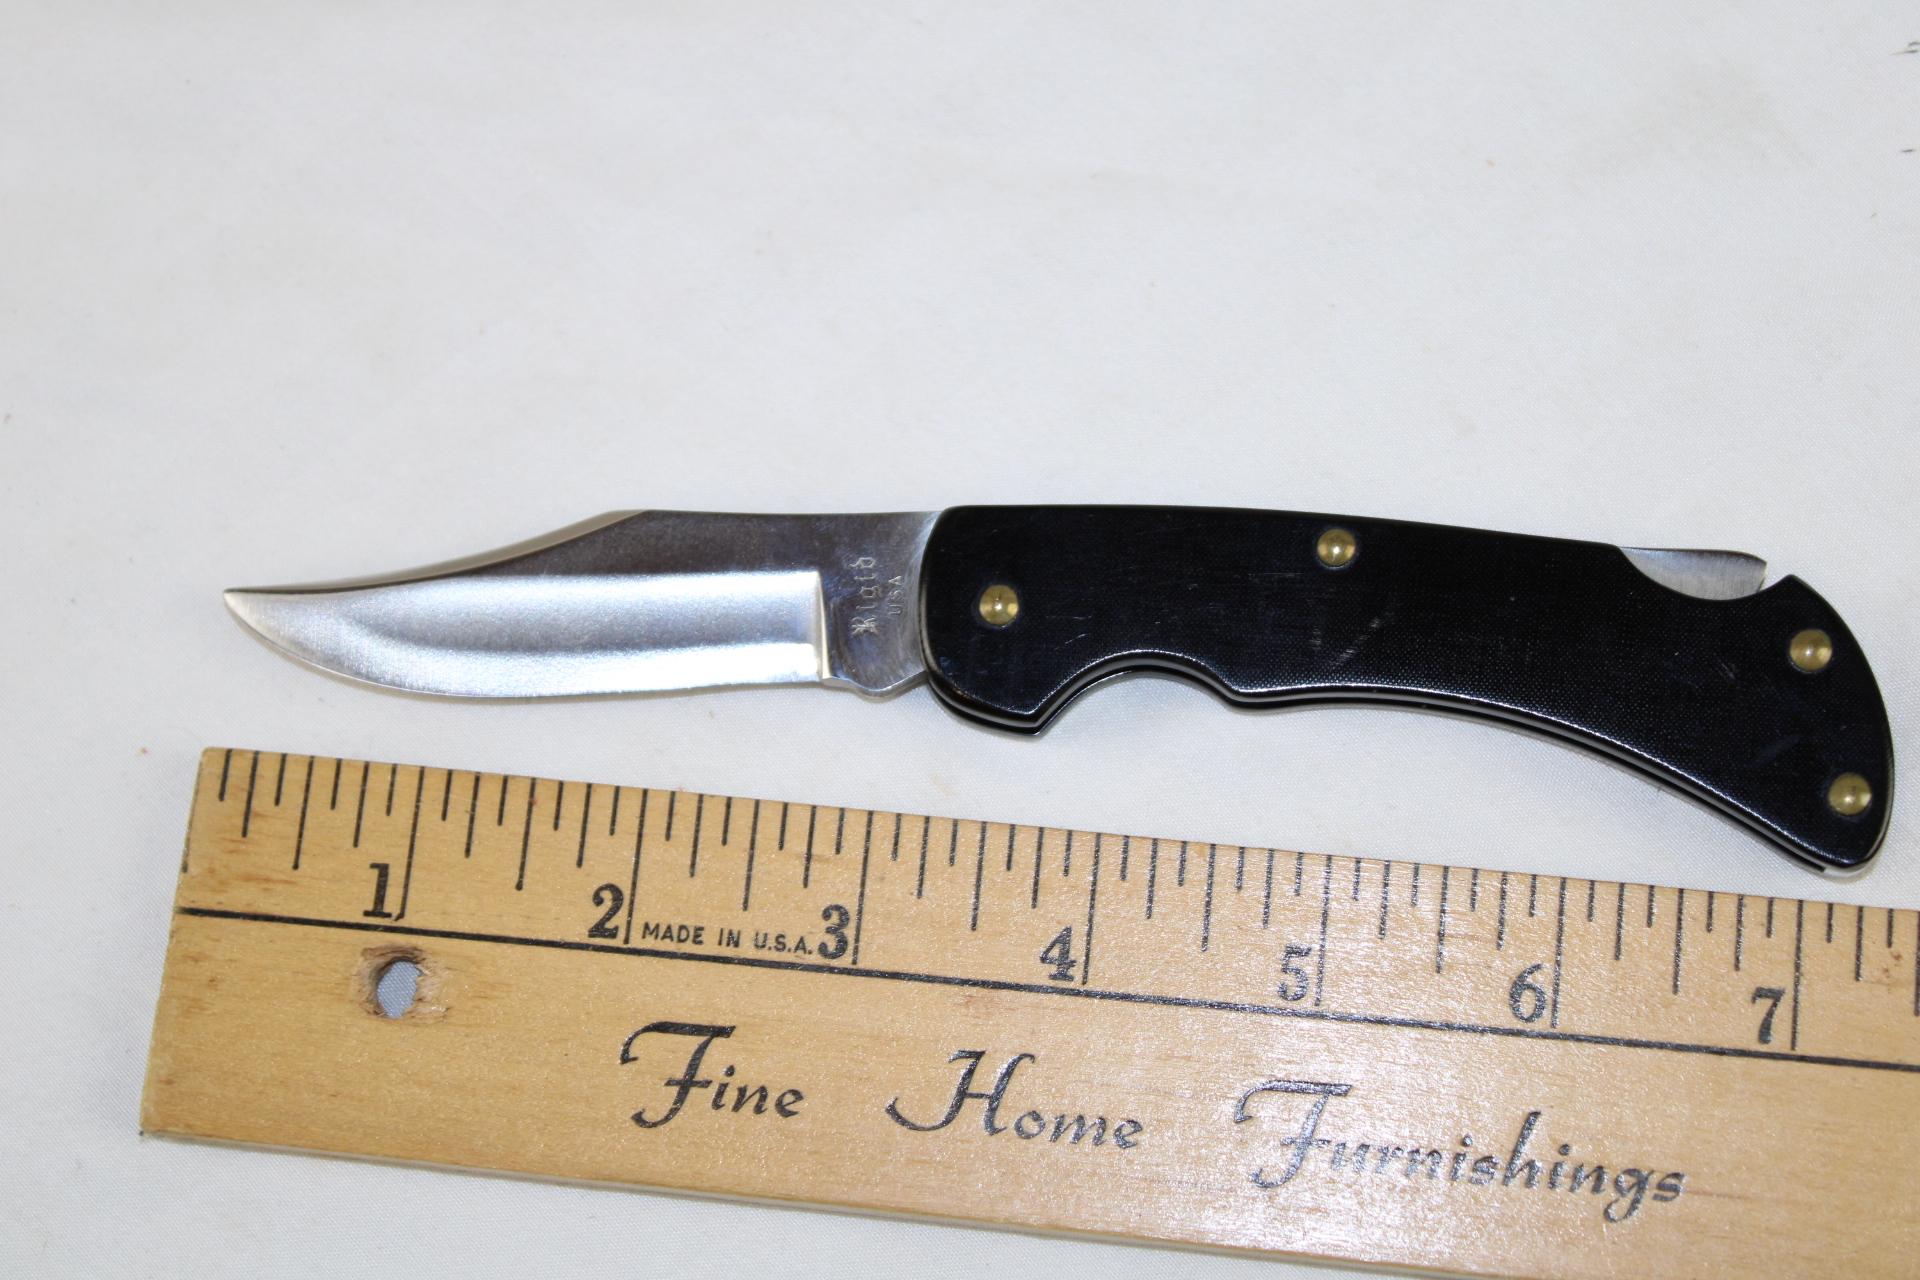 Rigid Locking Blade Pocket Knife.  Made in U.S.A.